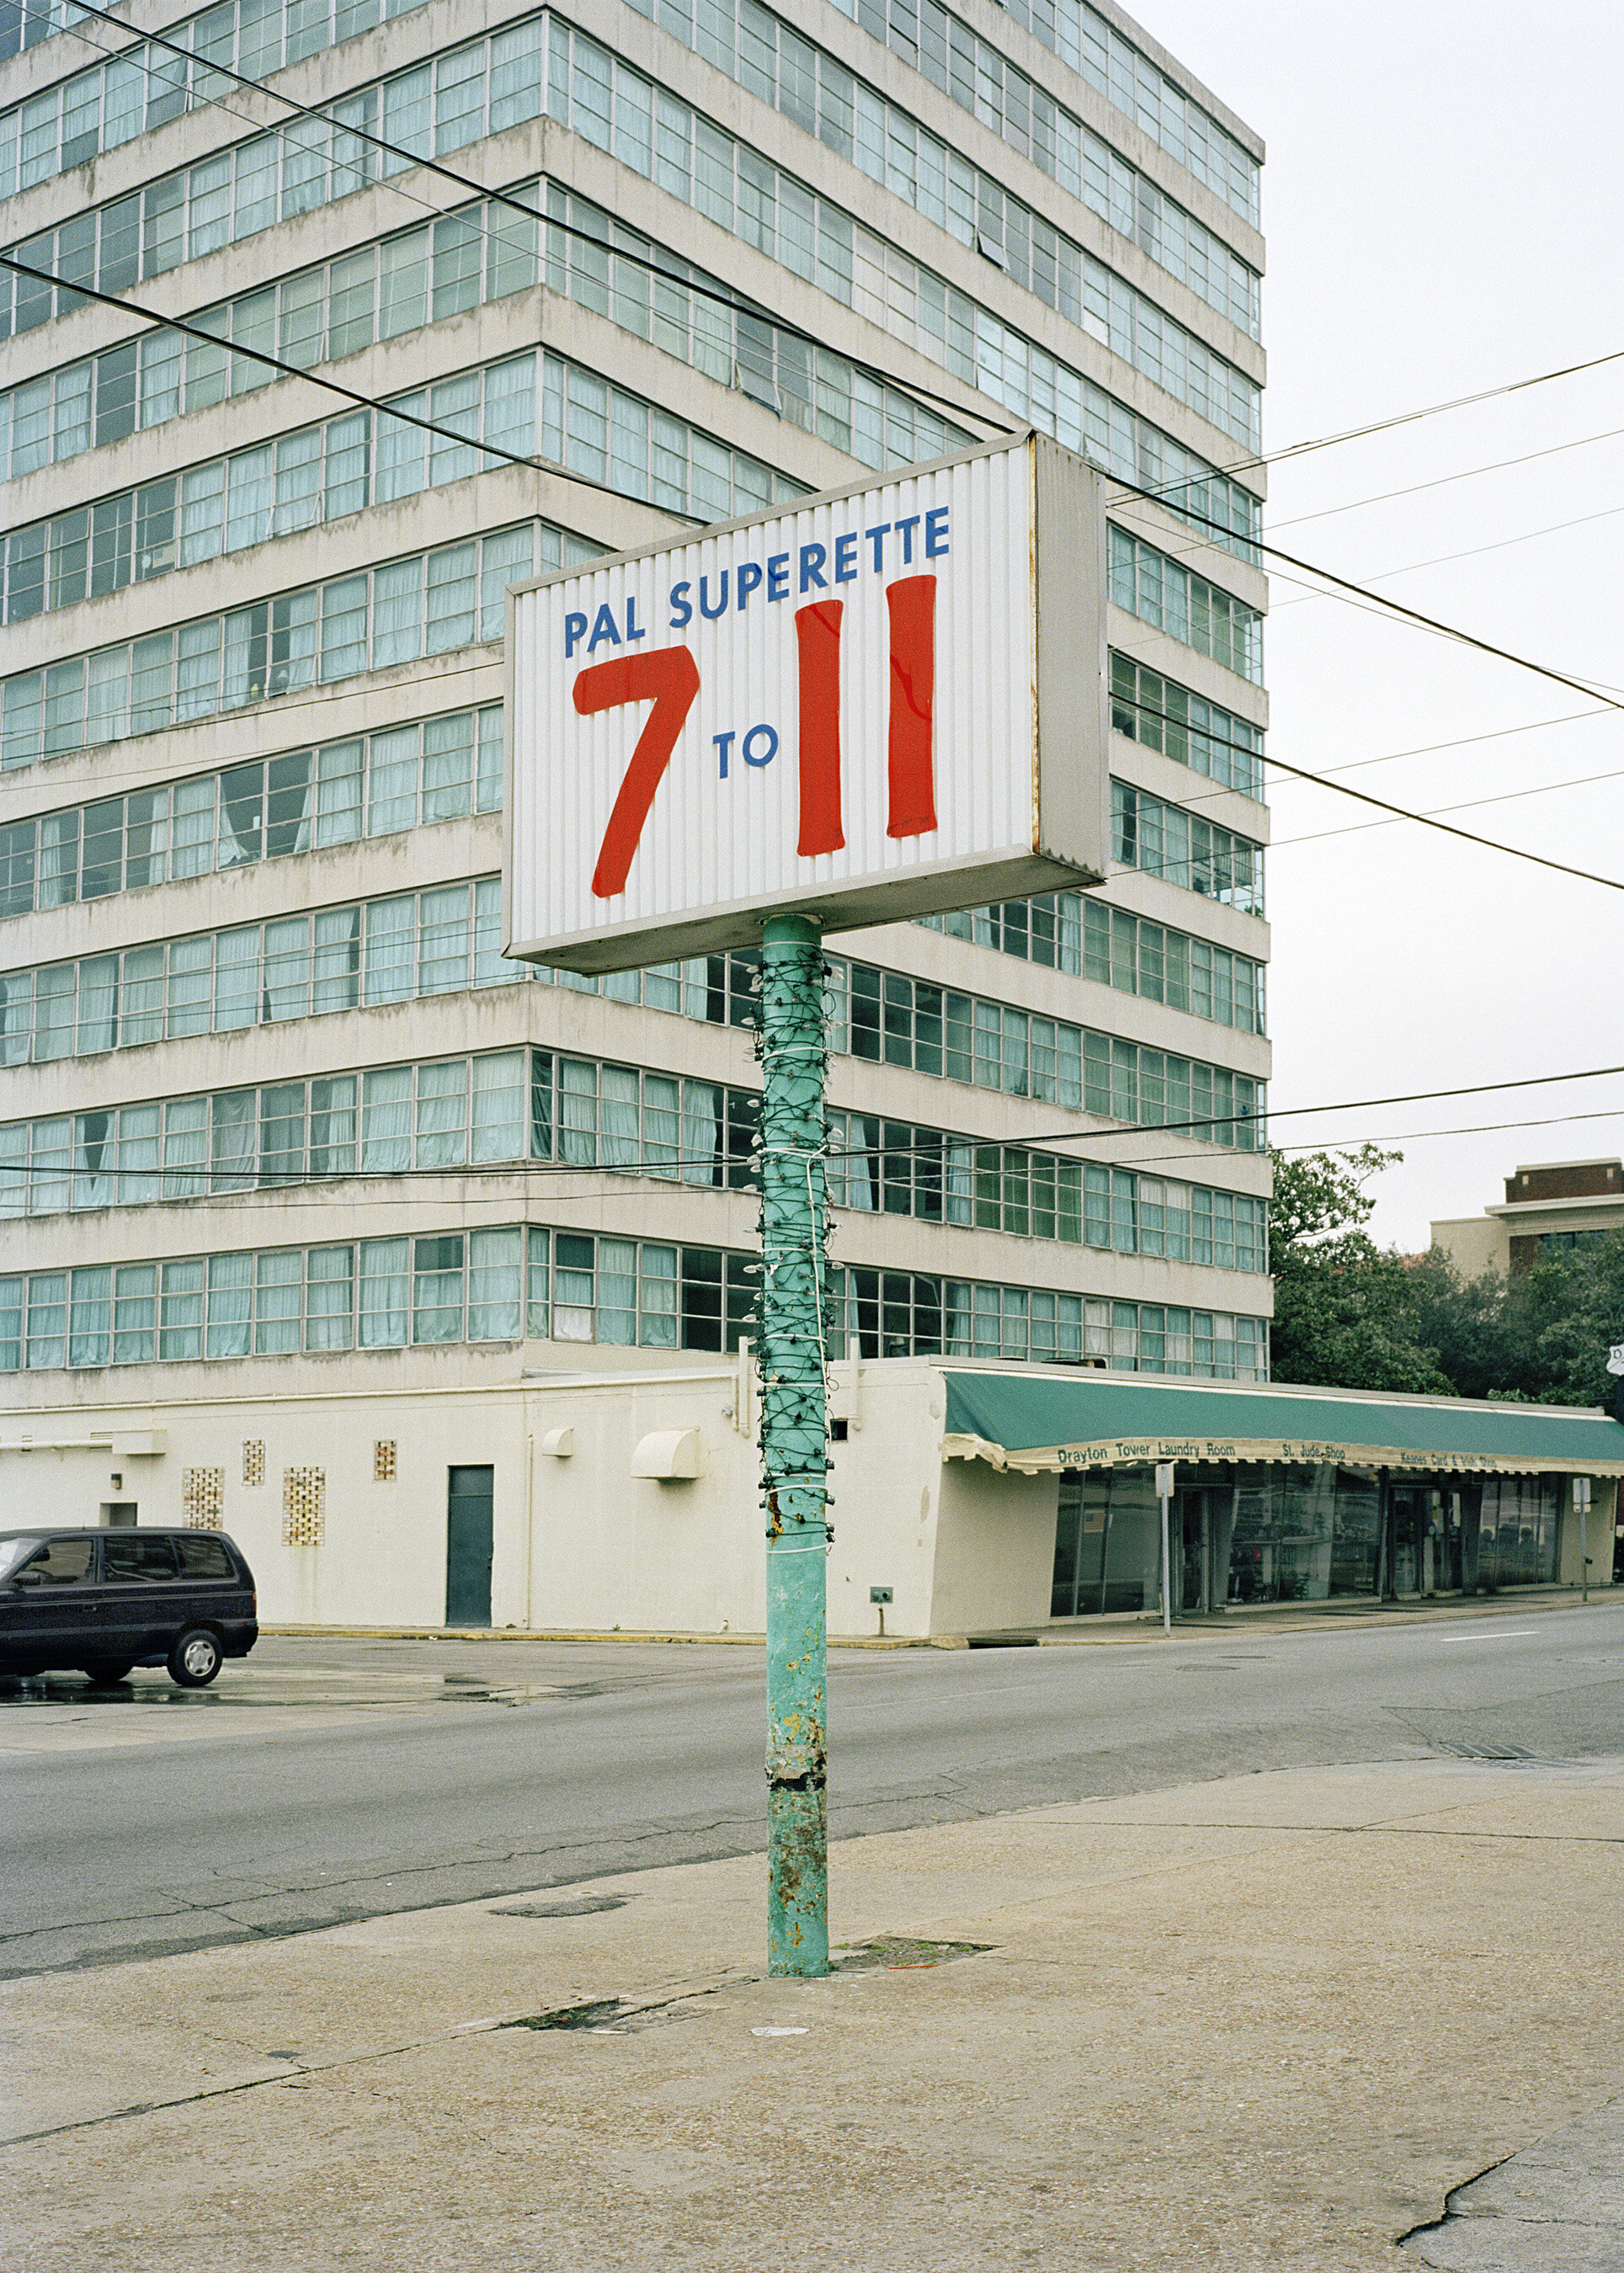 7 to 11 (with Drayton Towers), Savannah, GA. 2002